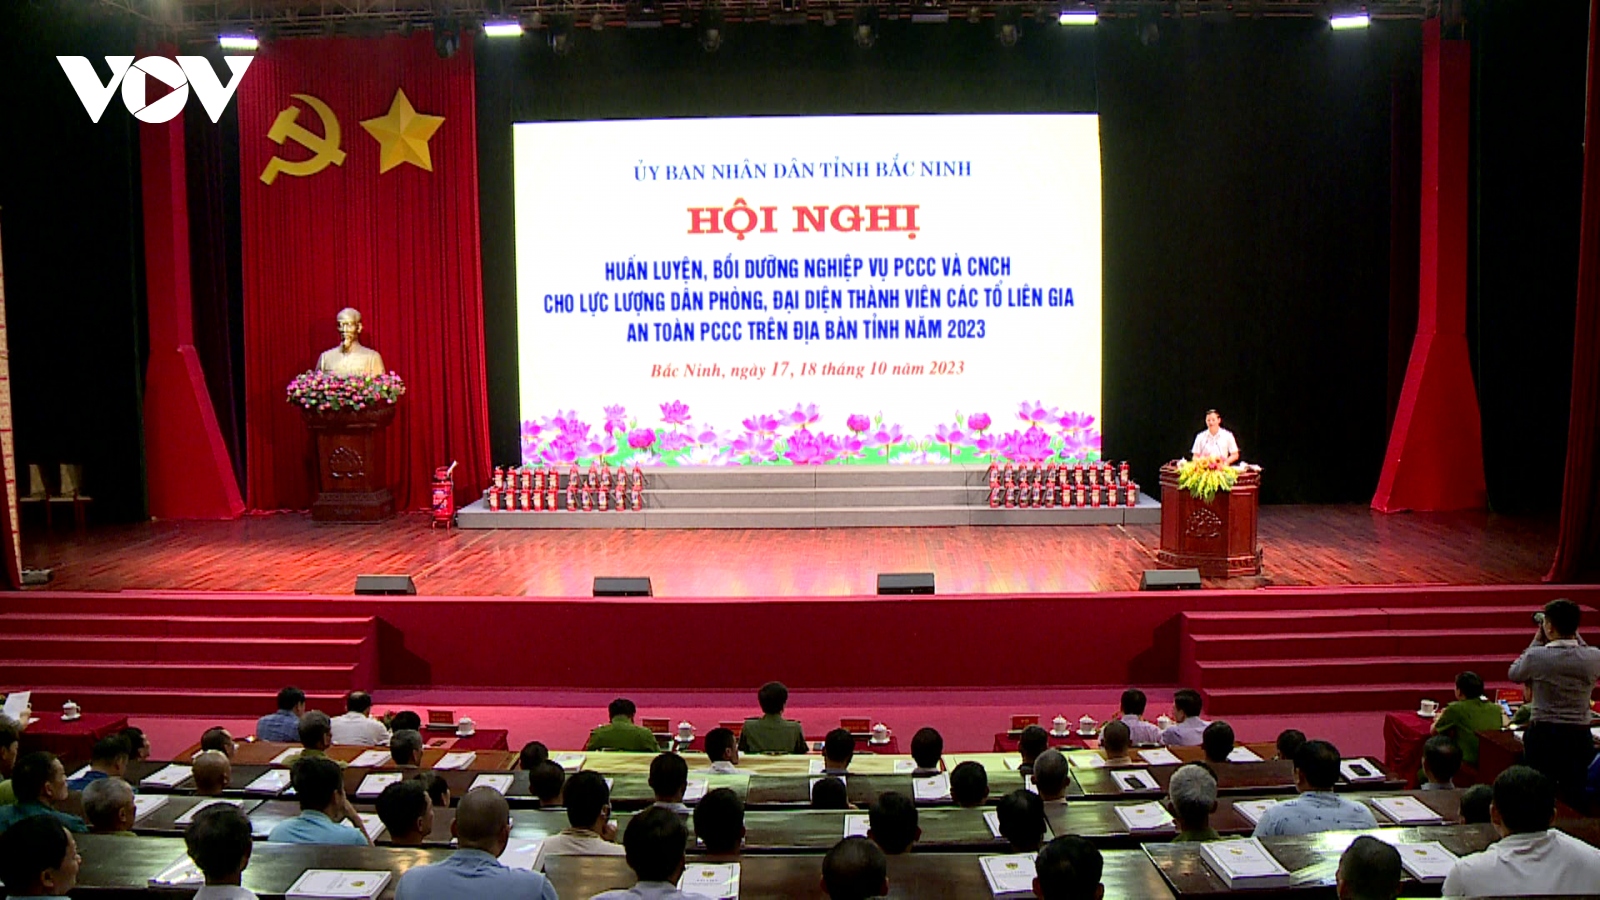 1.500 dân phòng, tổ liên gia ở Bắc Ninh học kỹ năng phòng cháy, chữa cháy